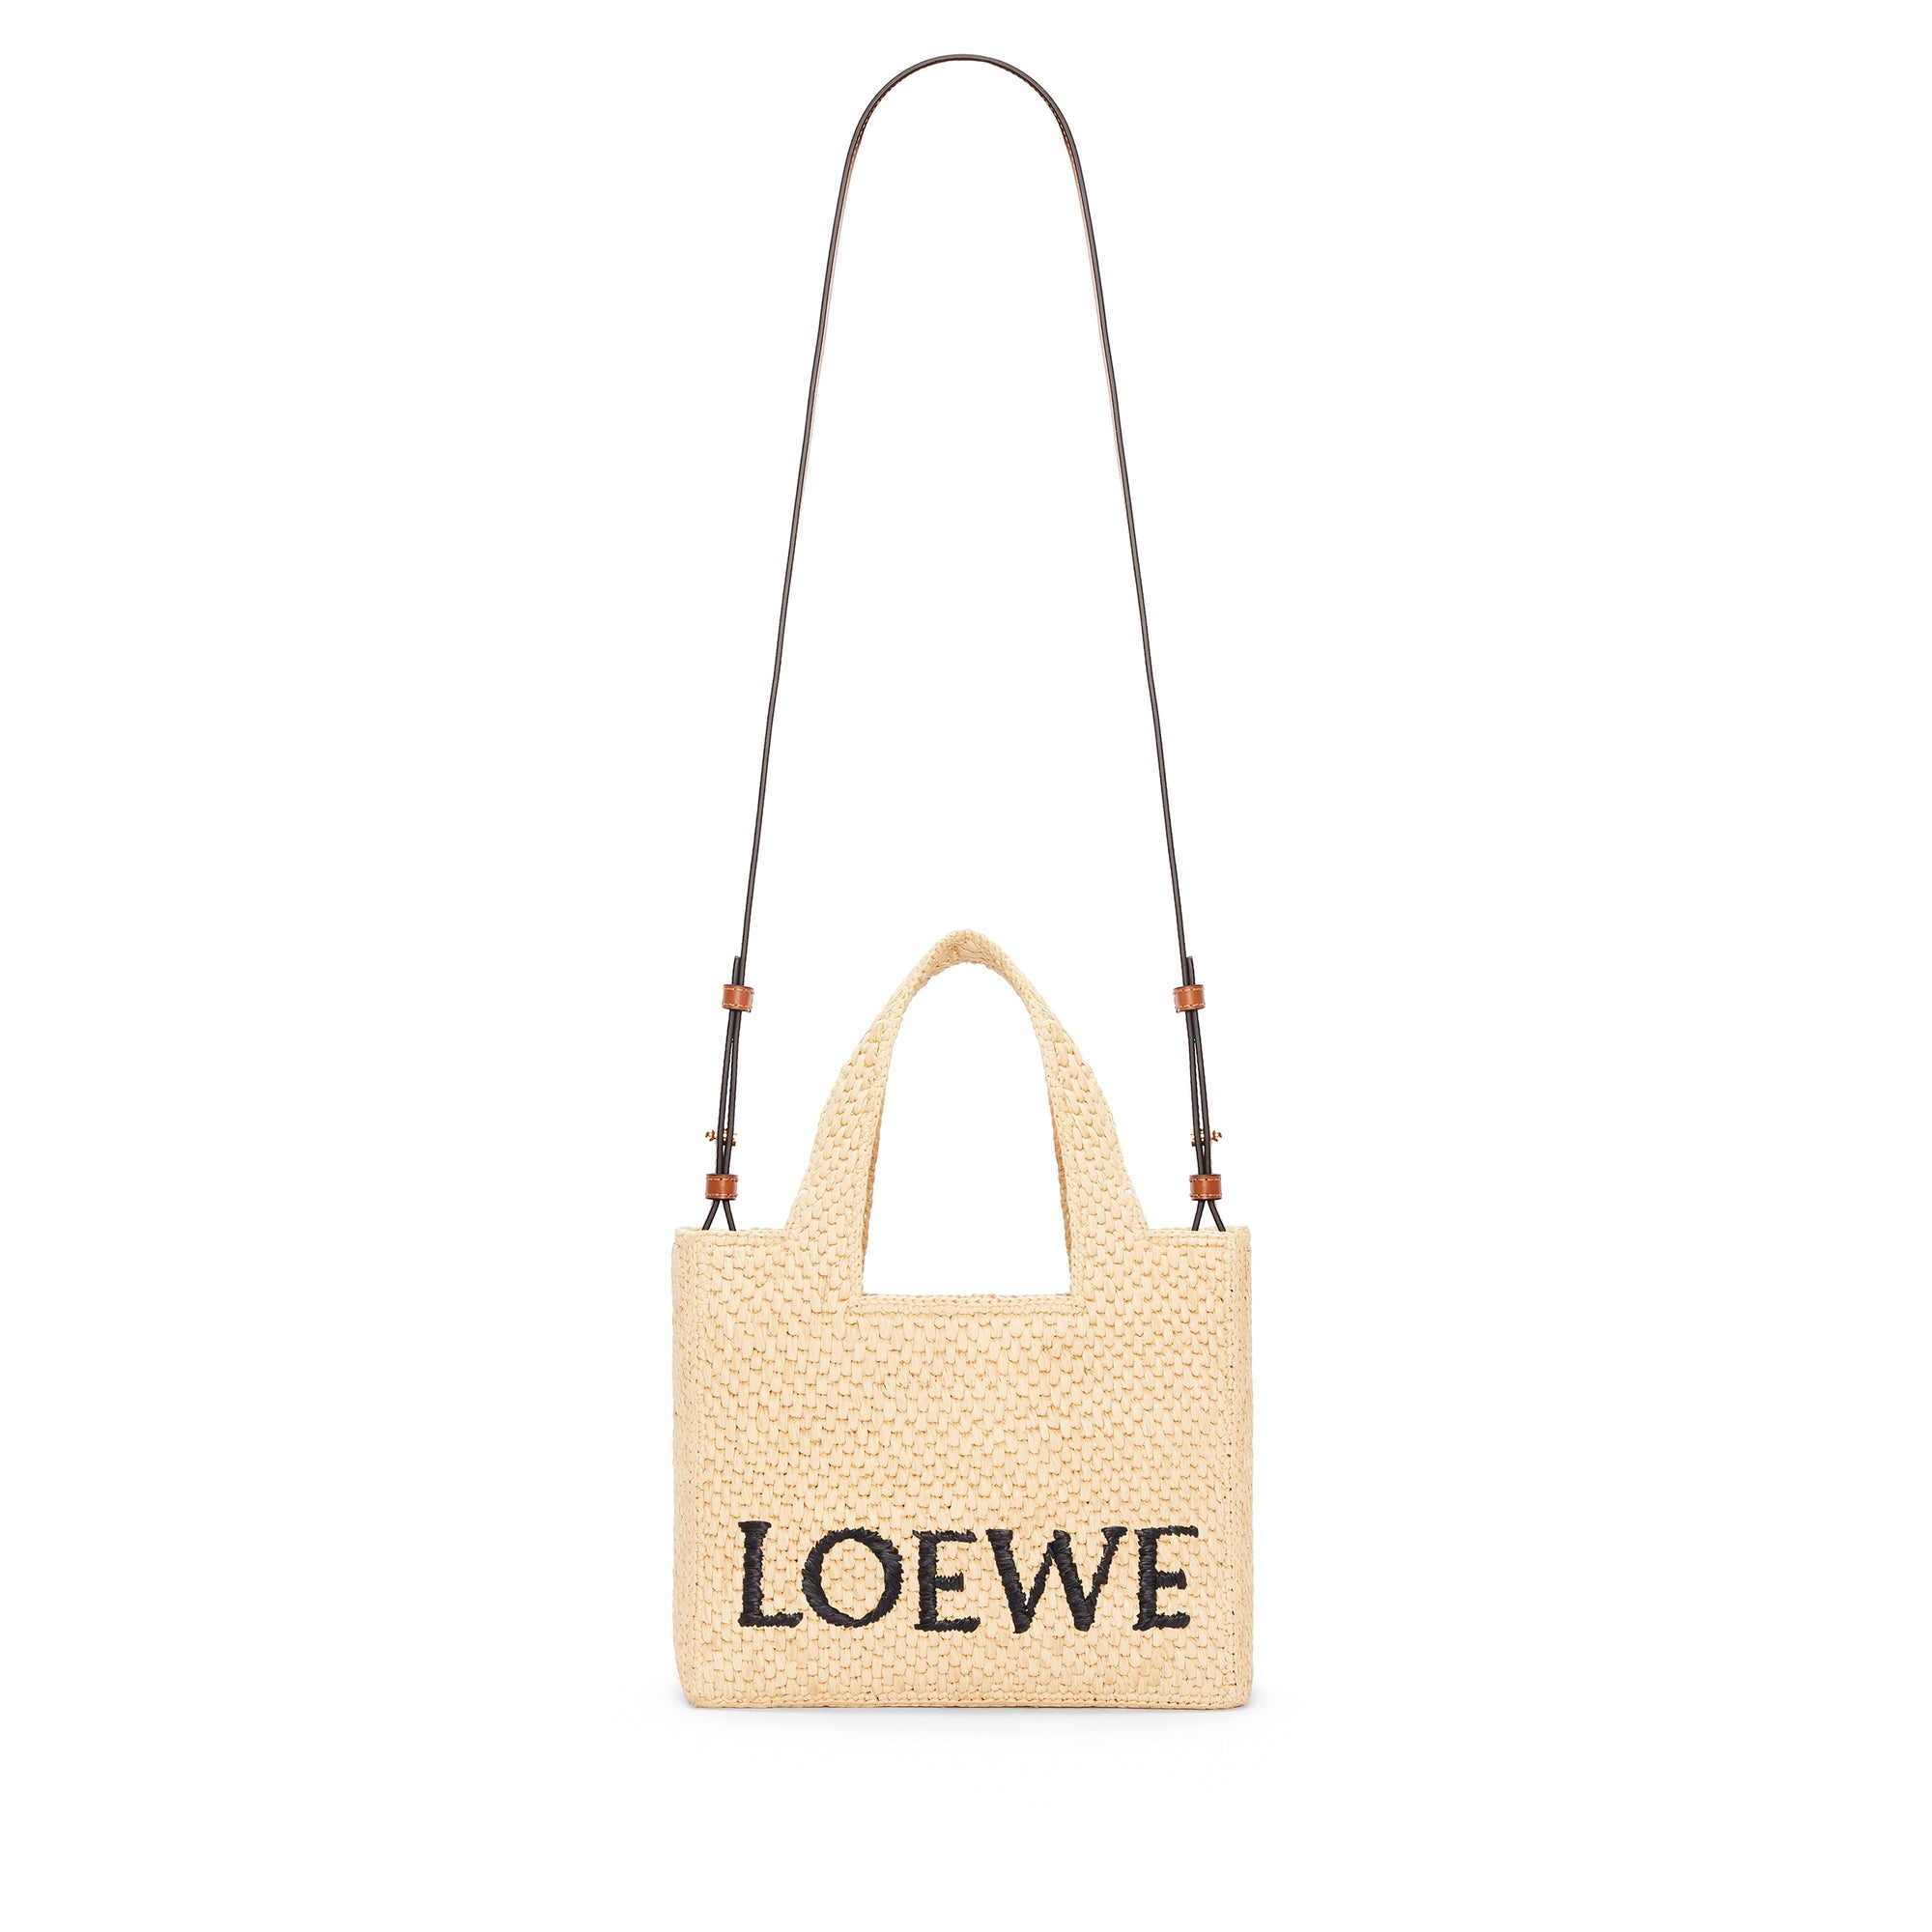 Loewe - Women’s Loewe Font Tote Small Bag - (Natural) view 3